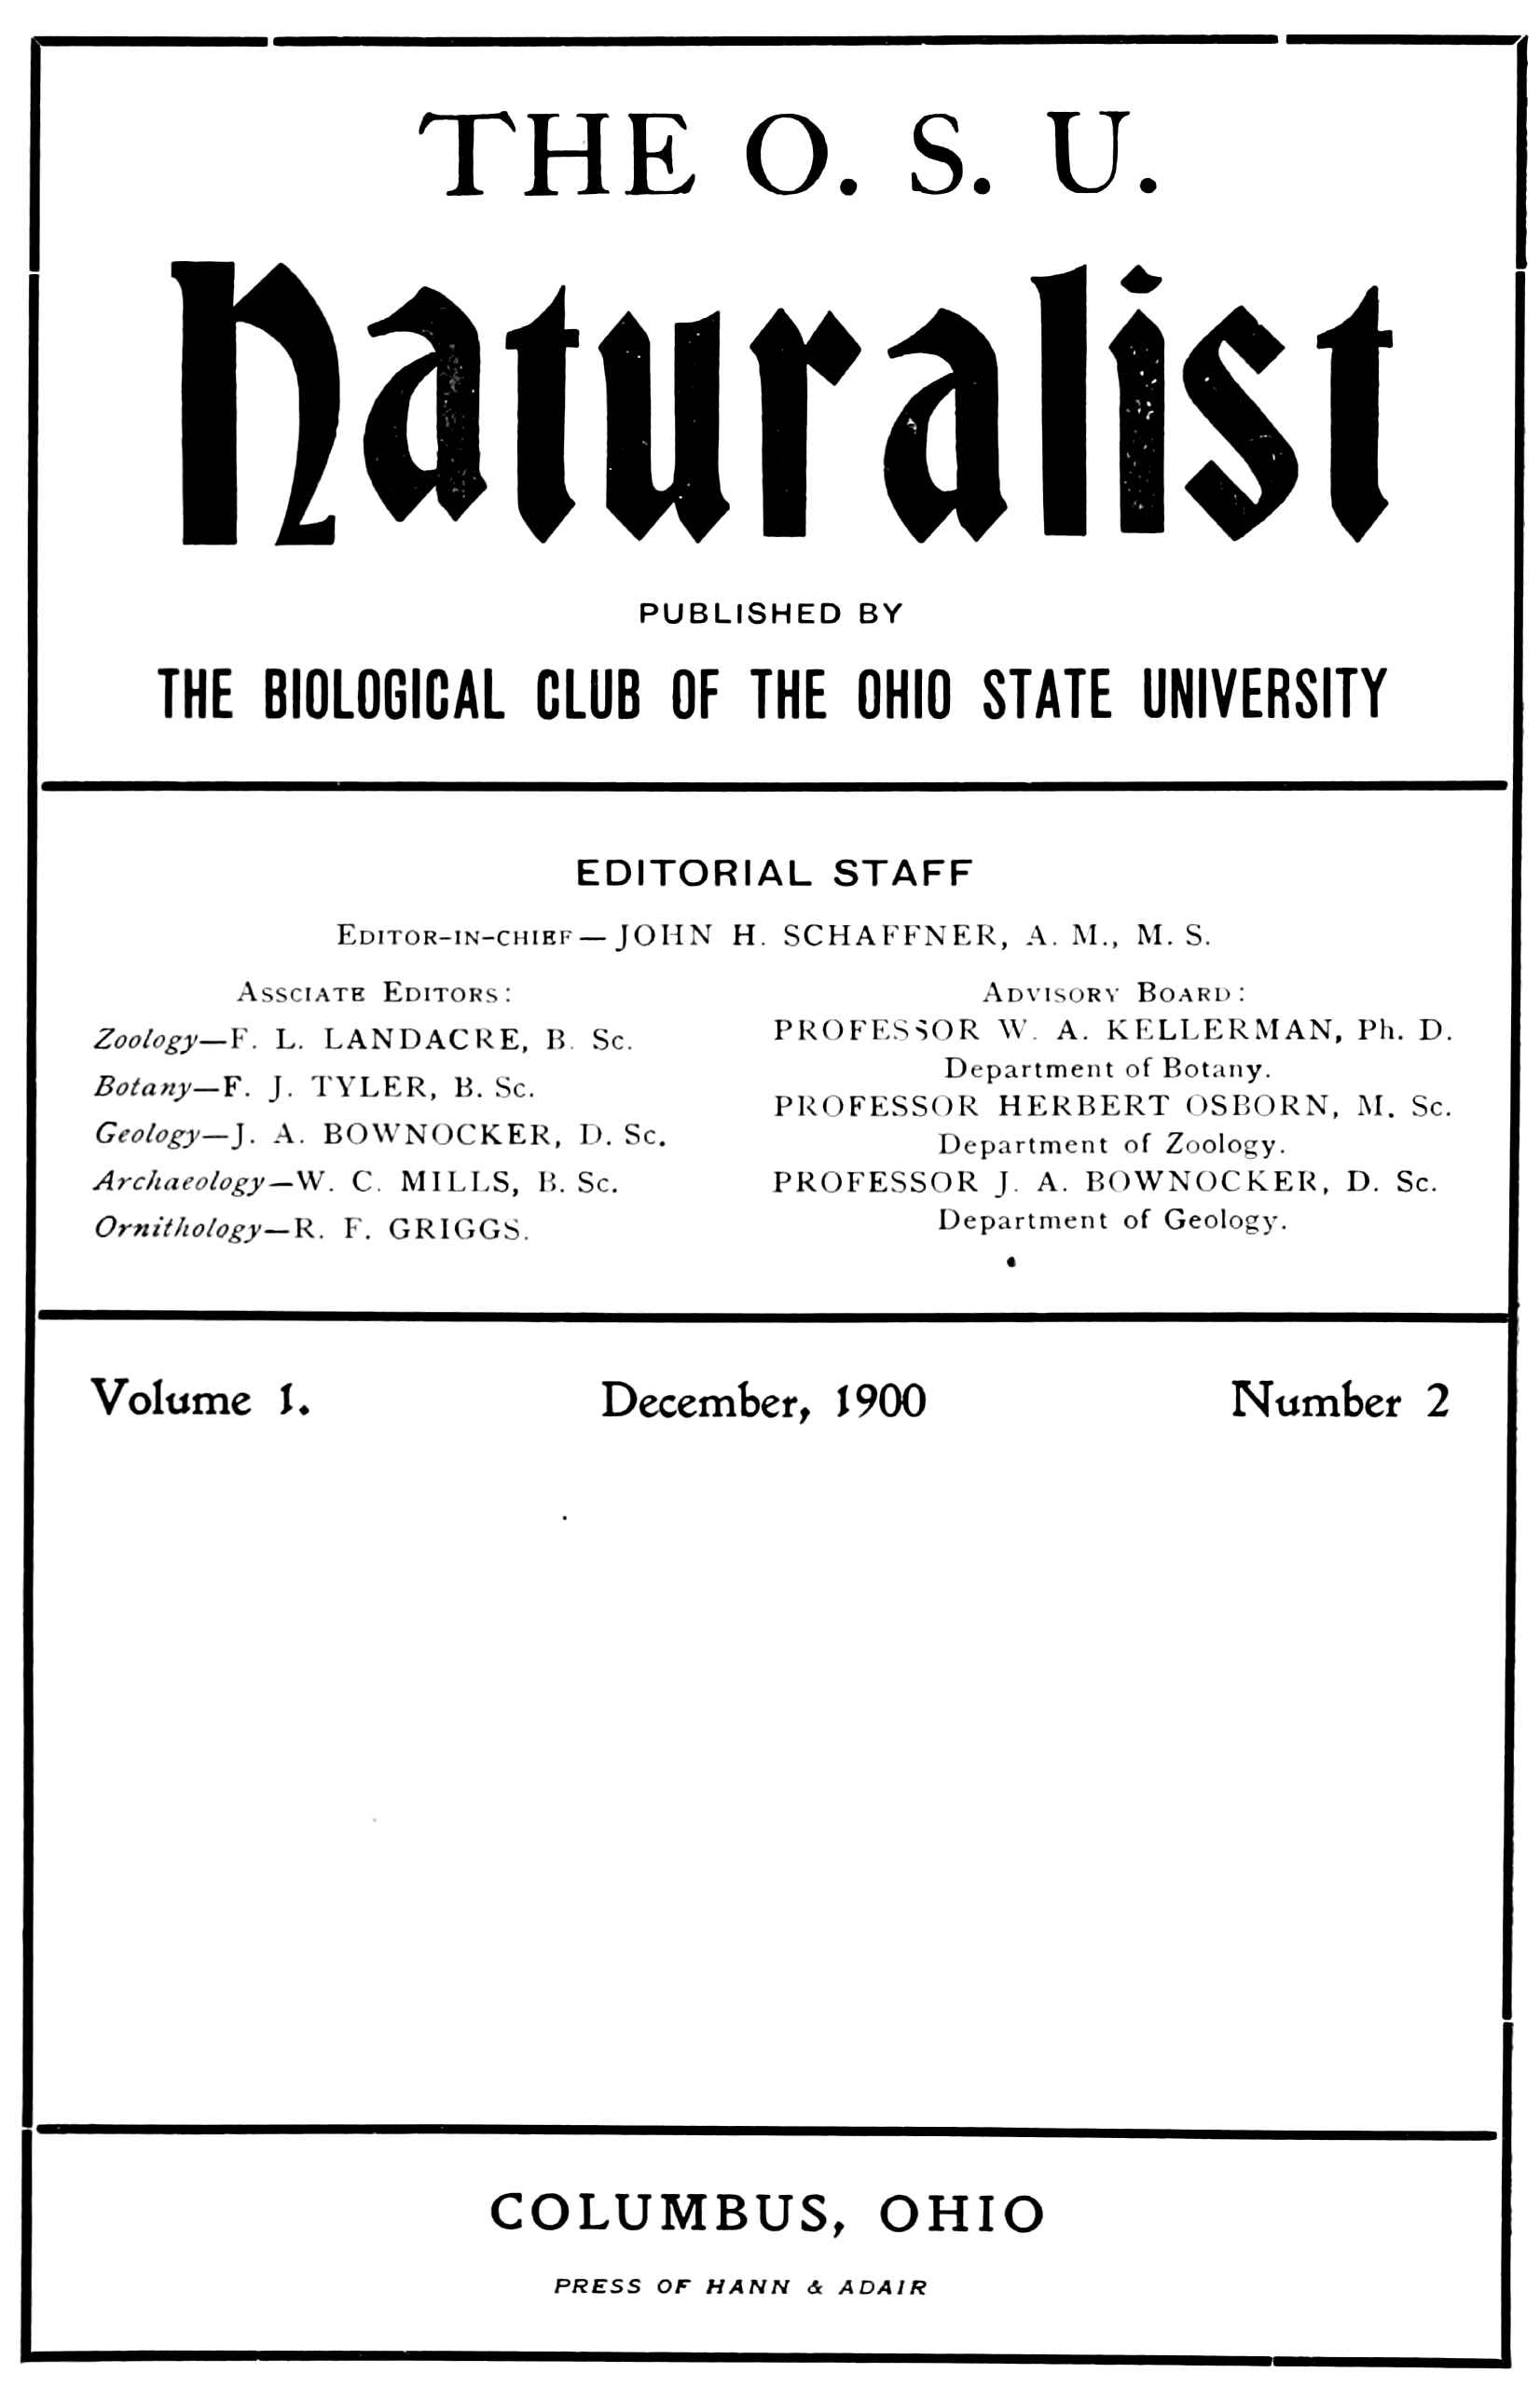 The O. S. U. Naturalist, Vol. 1, No. 2, December, 1900